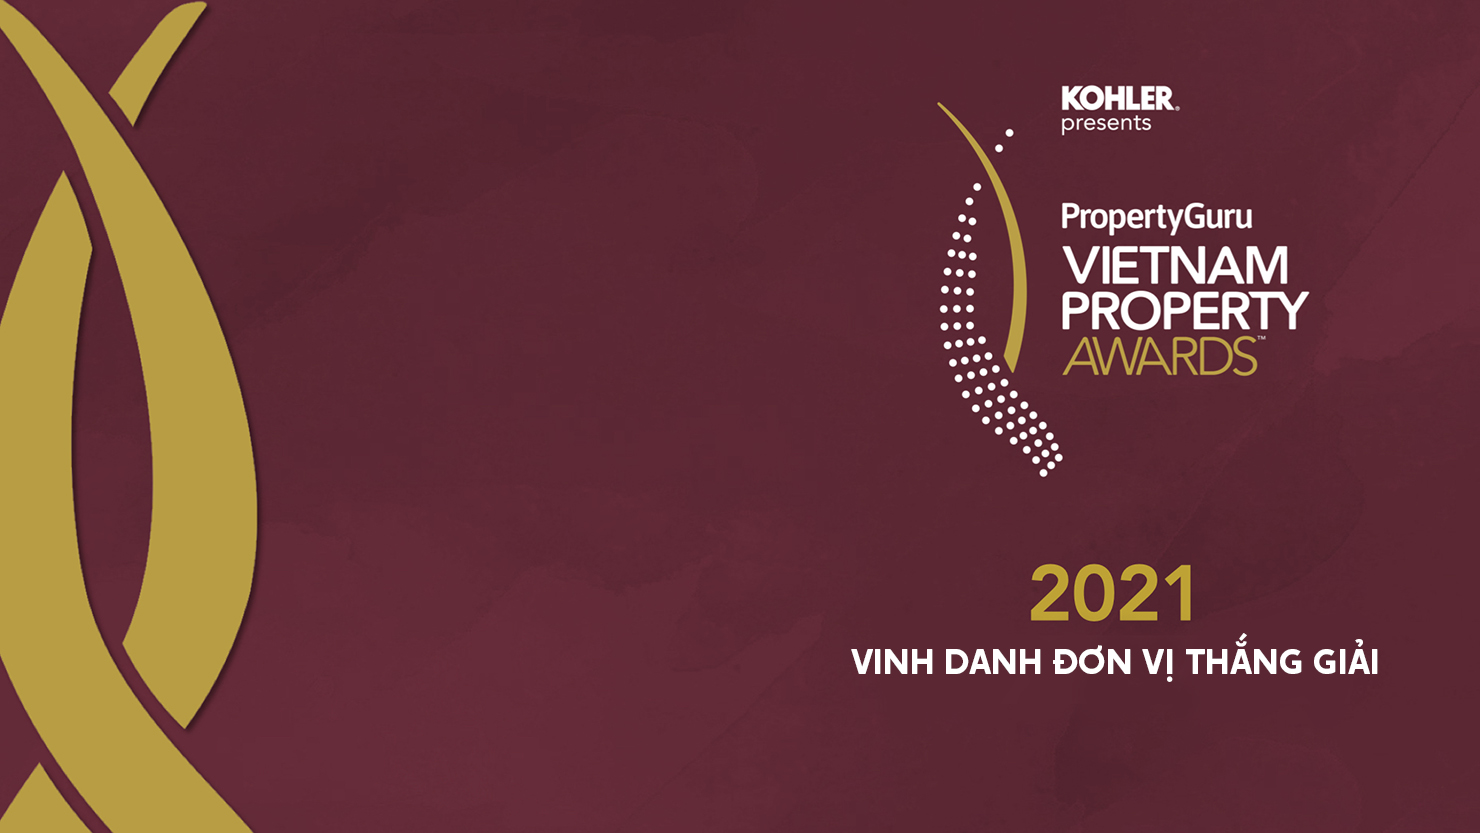 Vinh danh 71 nhà phát triển BĐS nổi bật tại Lễ trao giải PropertyGuru Việt Nam 2021